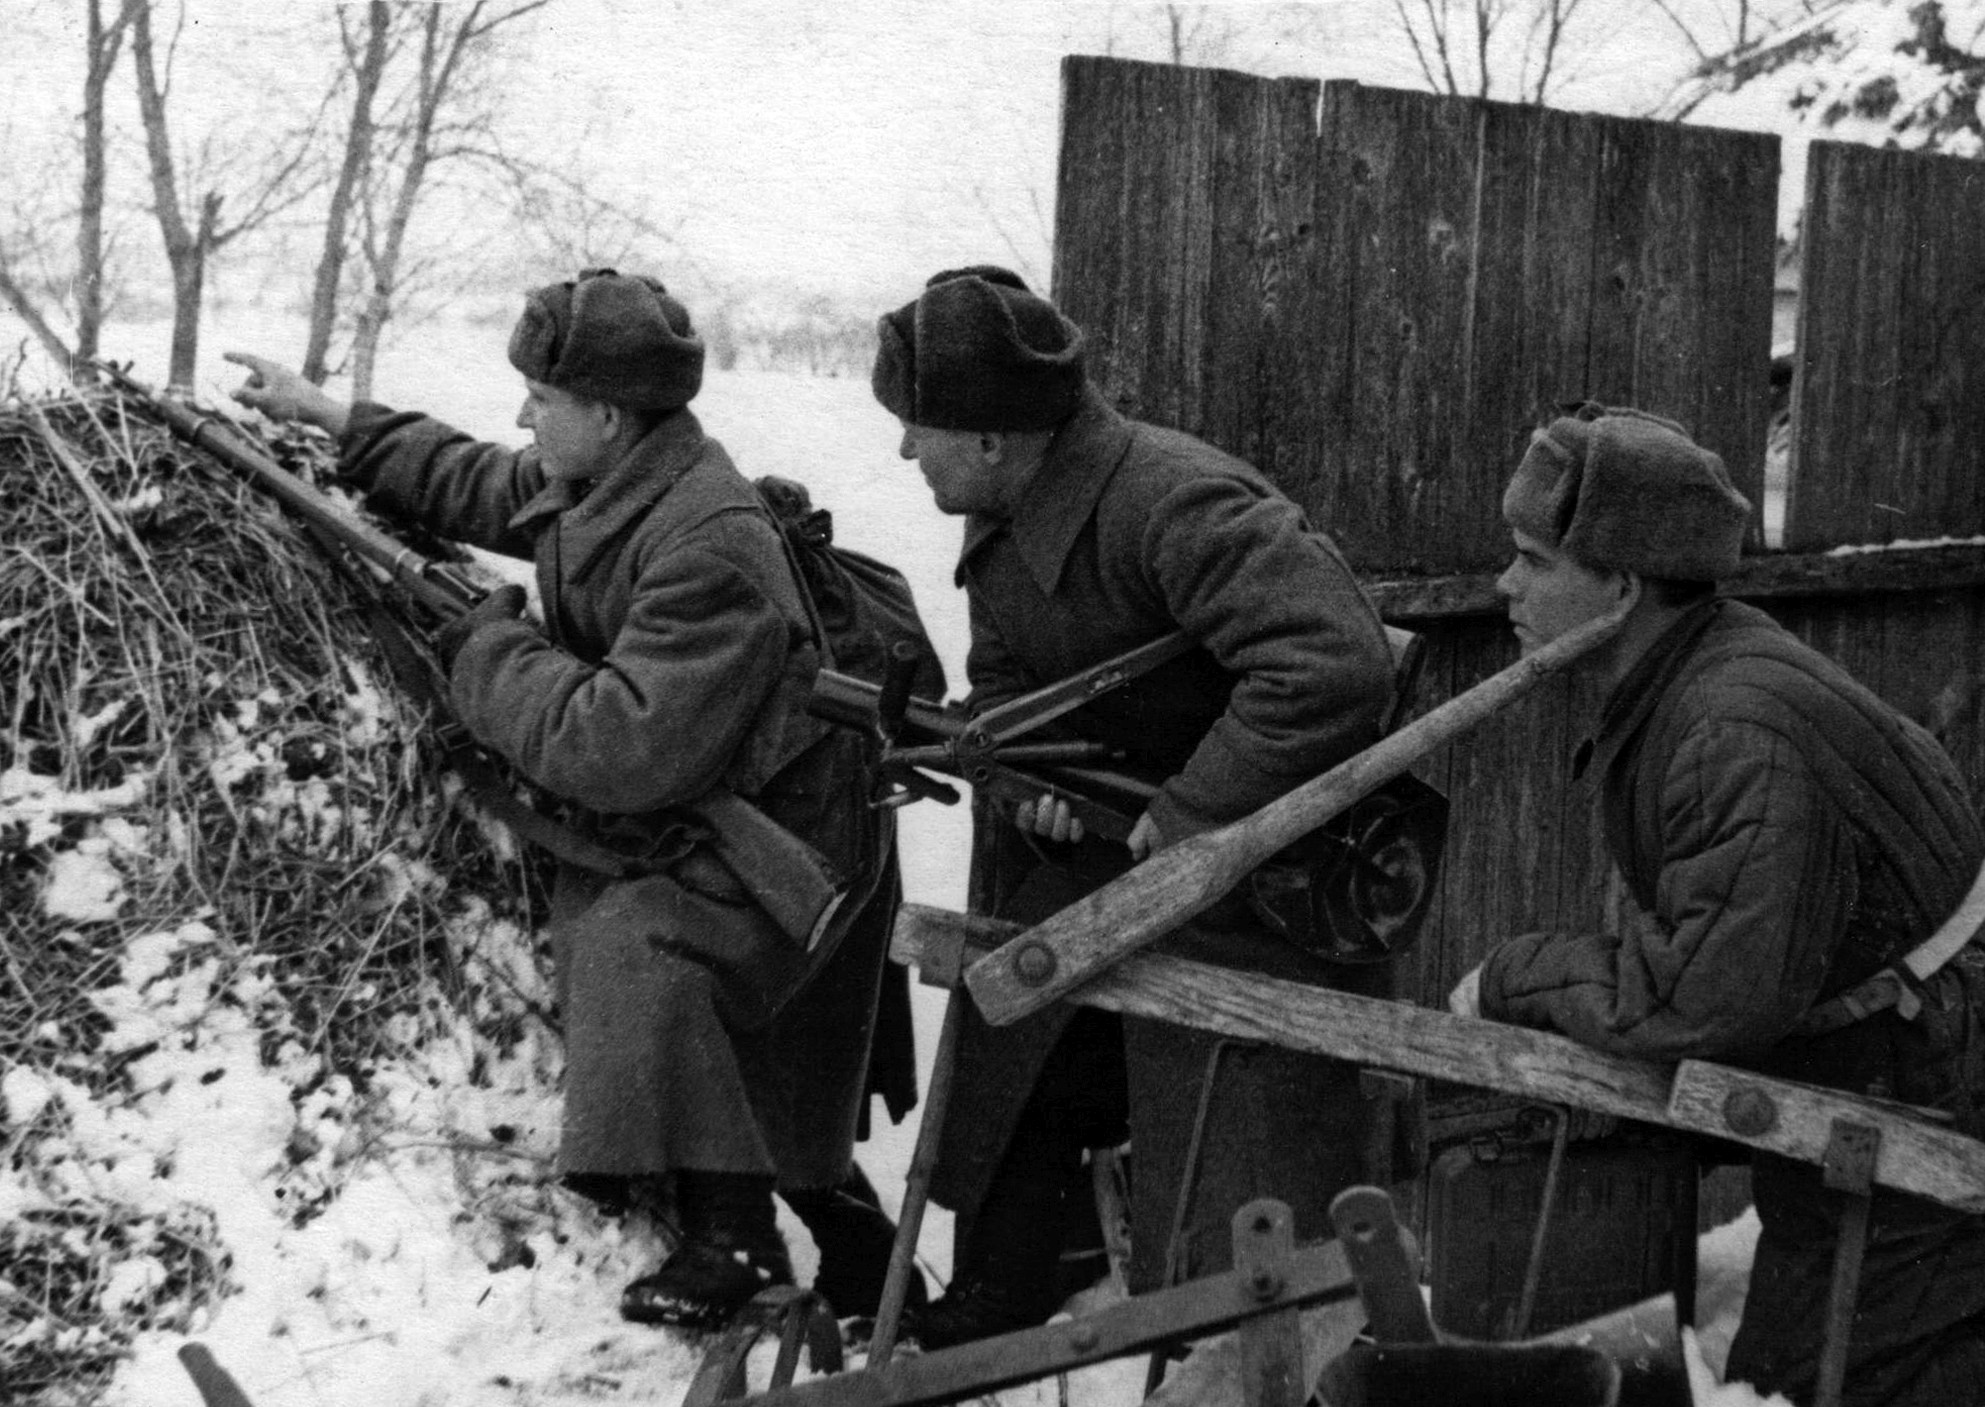 Зимой 1941 на защиту родины. Зима 1941 бой под Москвой. Советские солдаты под Москвой 1941. Советские солдаты в деревне 1941. Битва под Москвой ноябрь 1941.